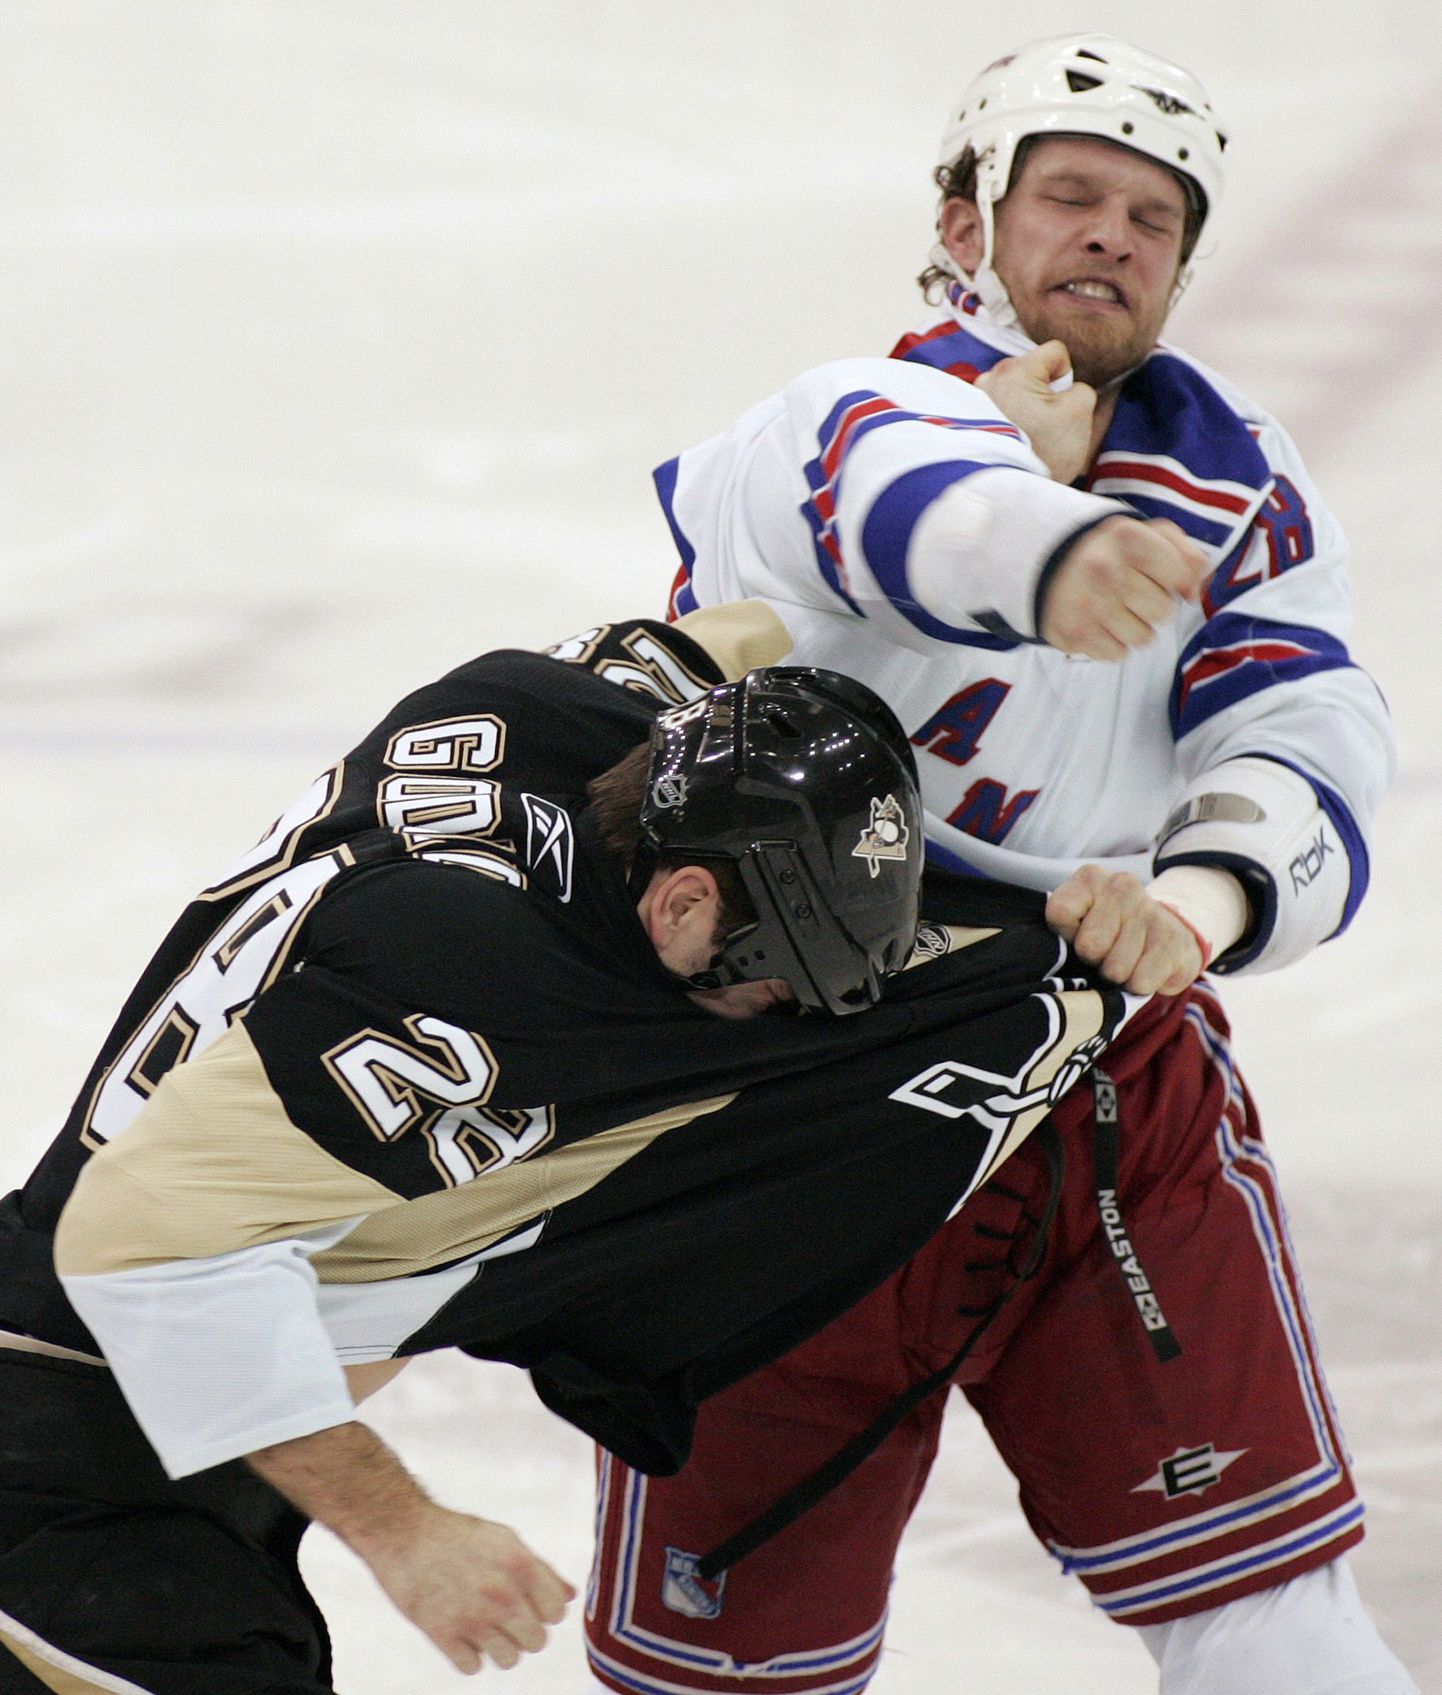 Jäähokiliigas NHL on rusikavõitlused tavaline nähtus. Pildil madistavad Pittsburgh Penguinsi Eric Godard(mustas) ja New York Rangersi Colton Orr